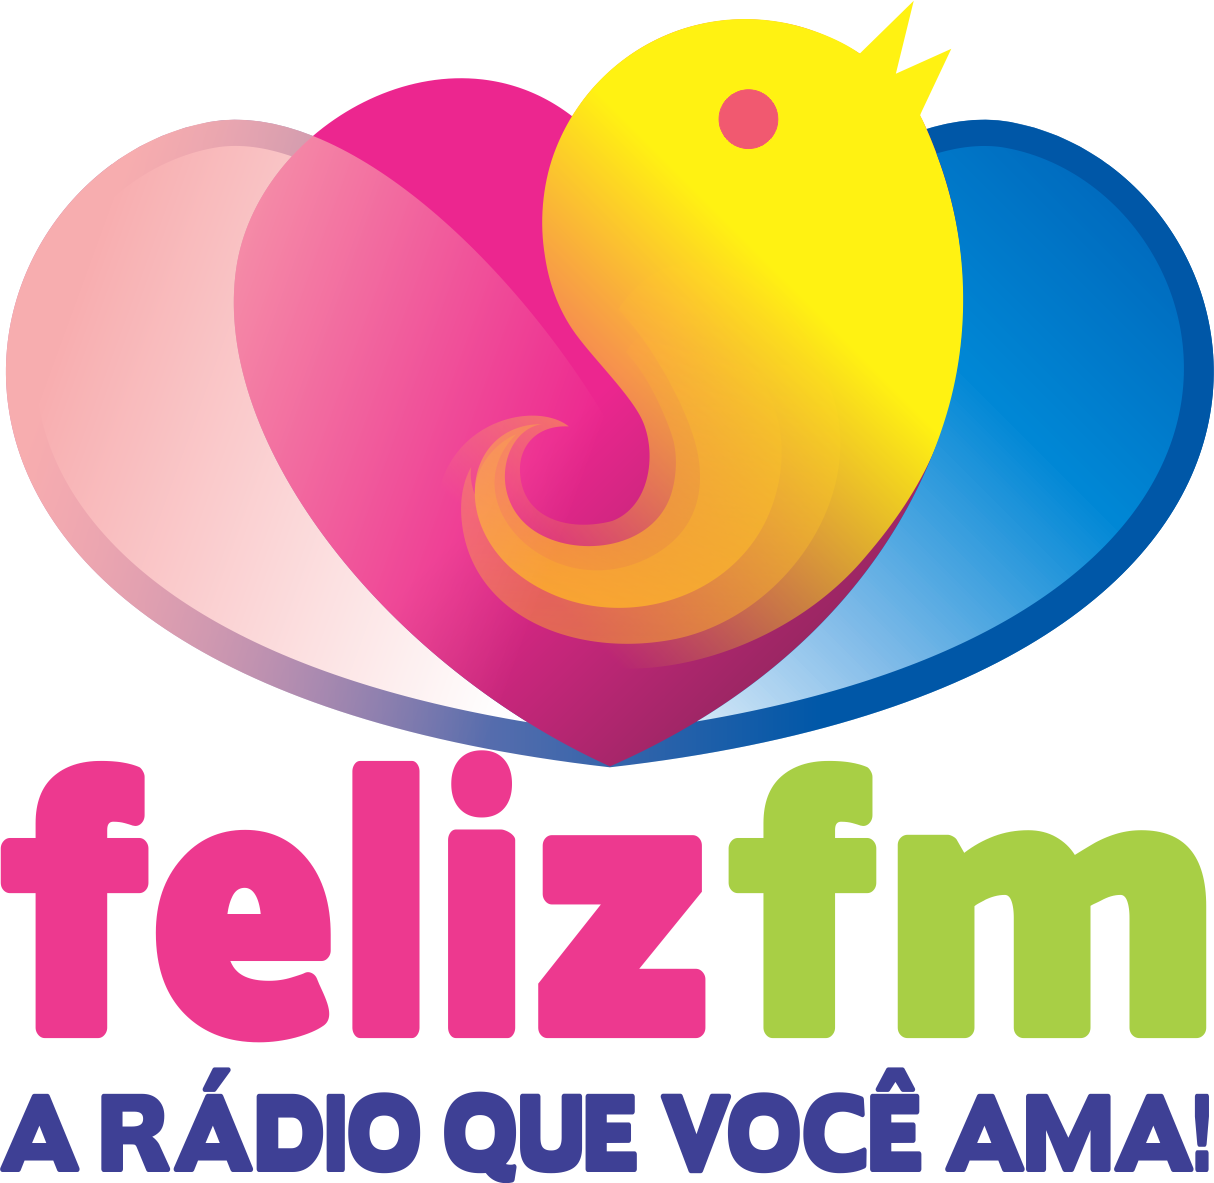 Feliz FM